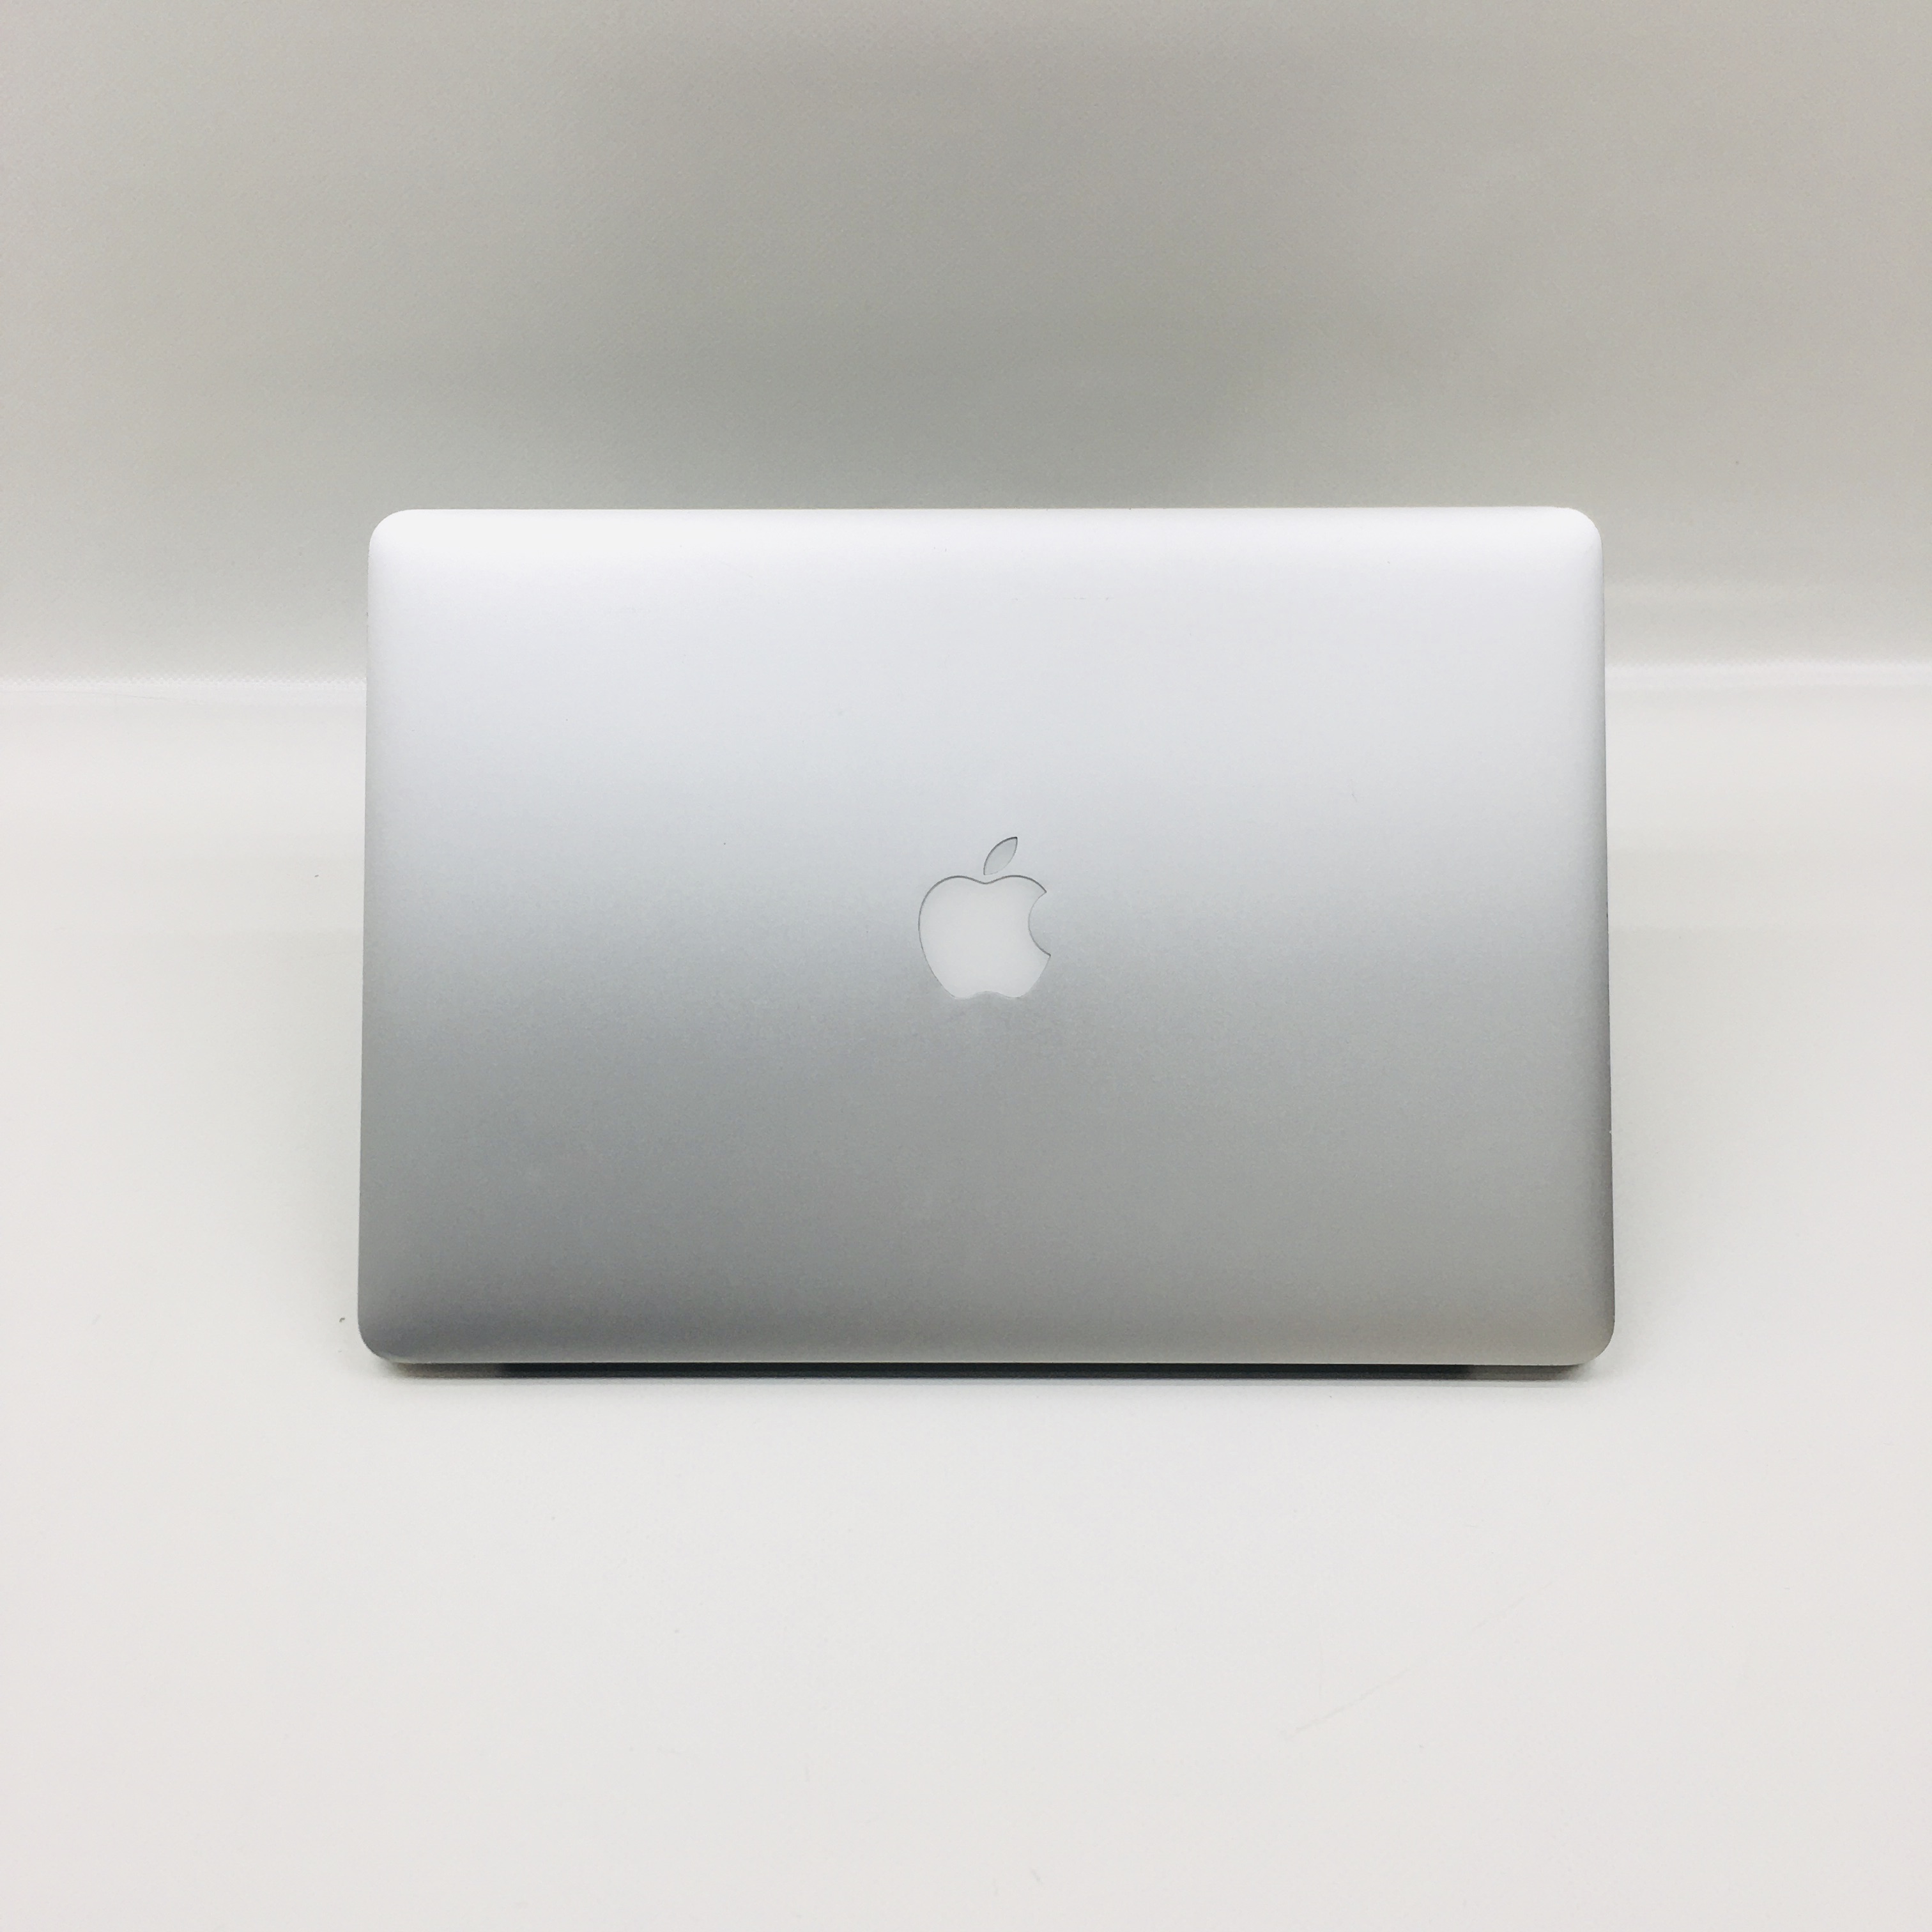 MacBook Pro Retina 15" Mid 2014 (Intel Quad-Core i7 2.5 GHz 16 GB RAM 256 GB SSD), Intel Quad-Core i7 2.5 GHz, 16 GB RAM, 256 GB SSD, image 4